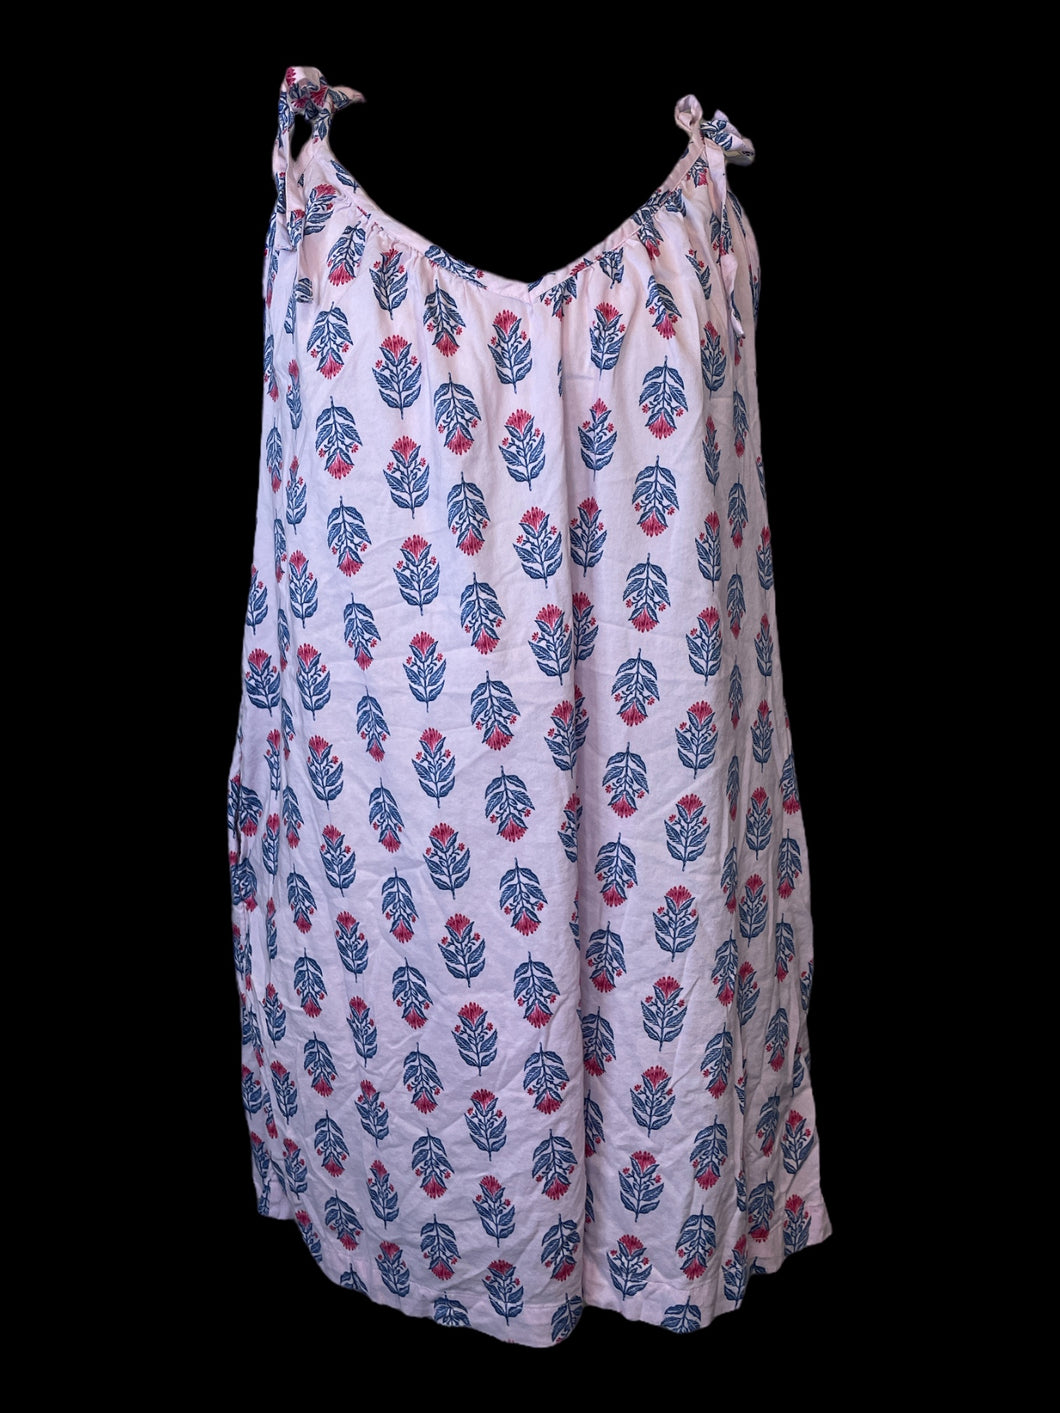 L Light pink, blue, & hot pink floral pattern v neckline sleeveless dress w/ adjustable tie straps, & pockets